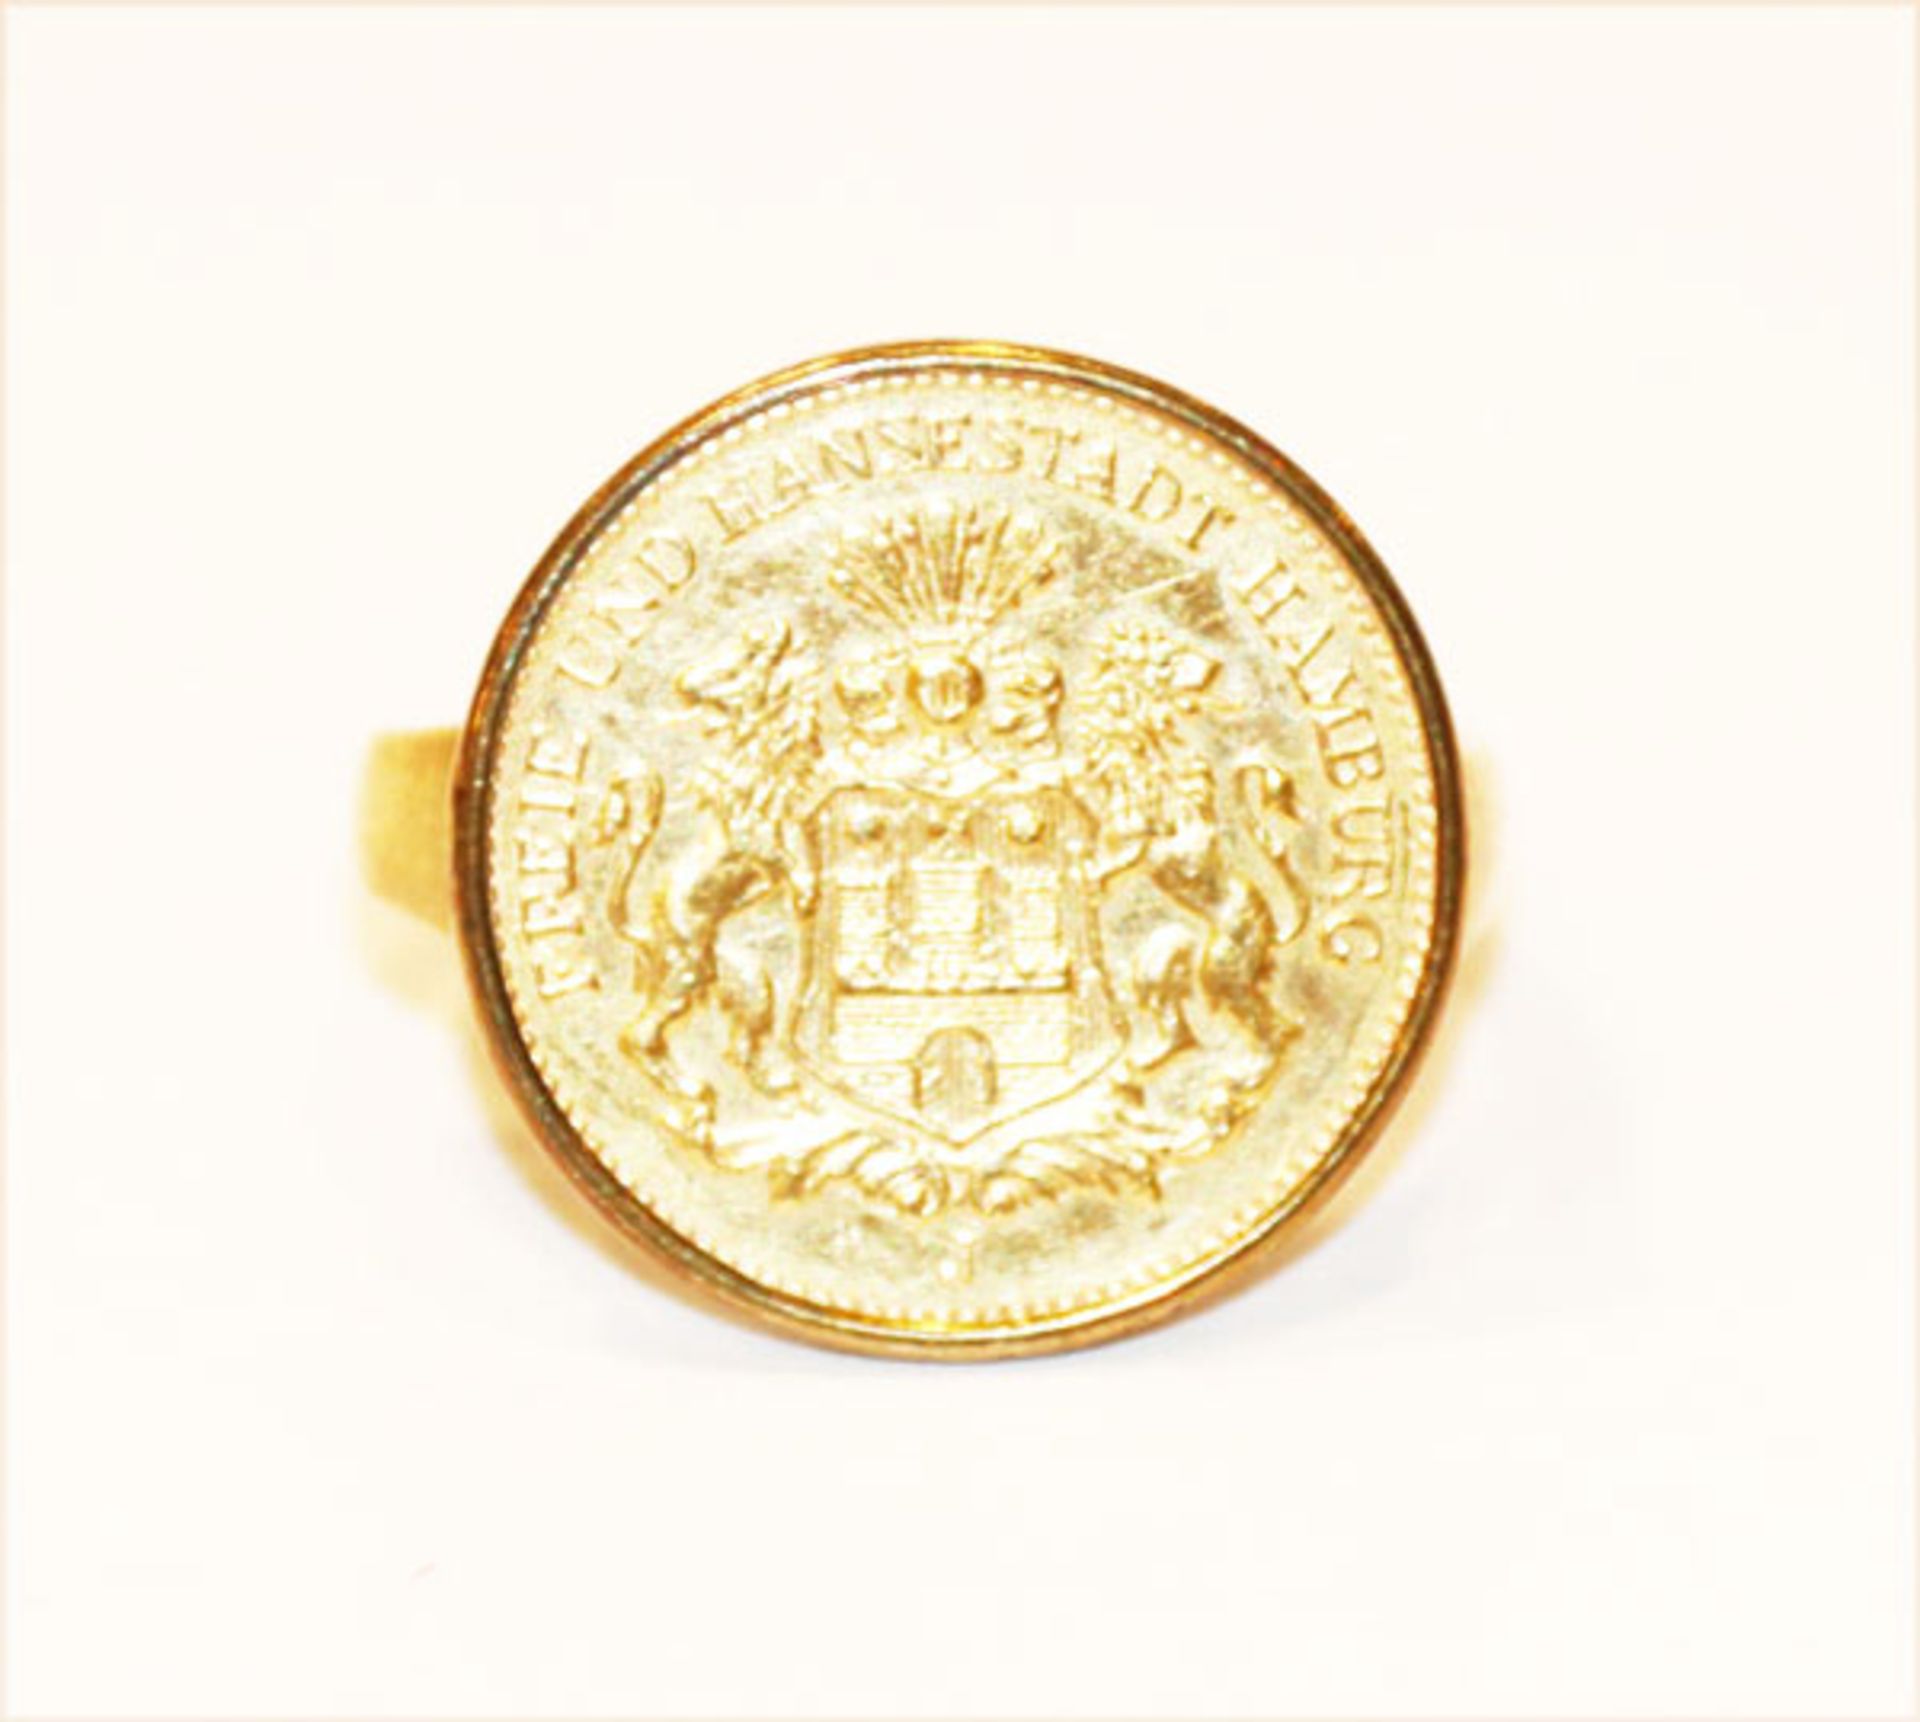 14 k Gelbgold Ring mit gefaßter 10 Reichsmark Münze Hamburg, 4 gr., Gr. 52